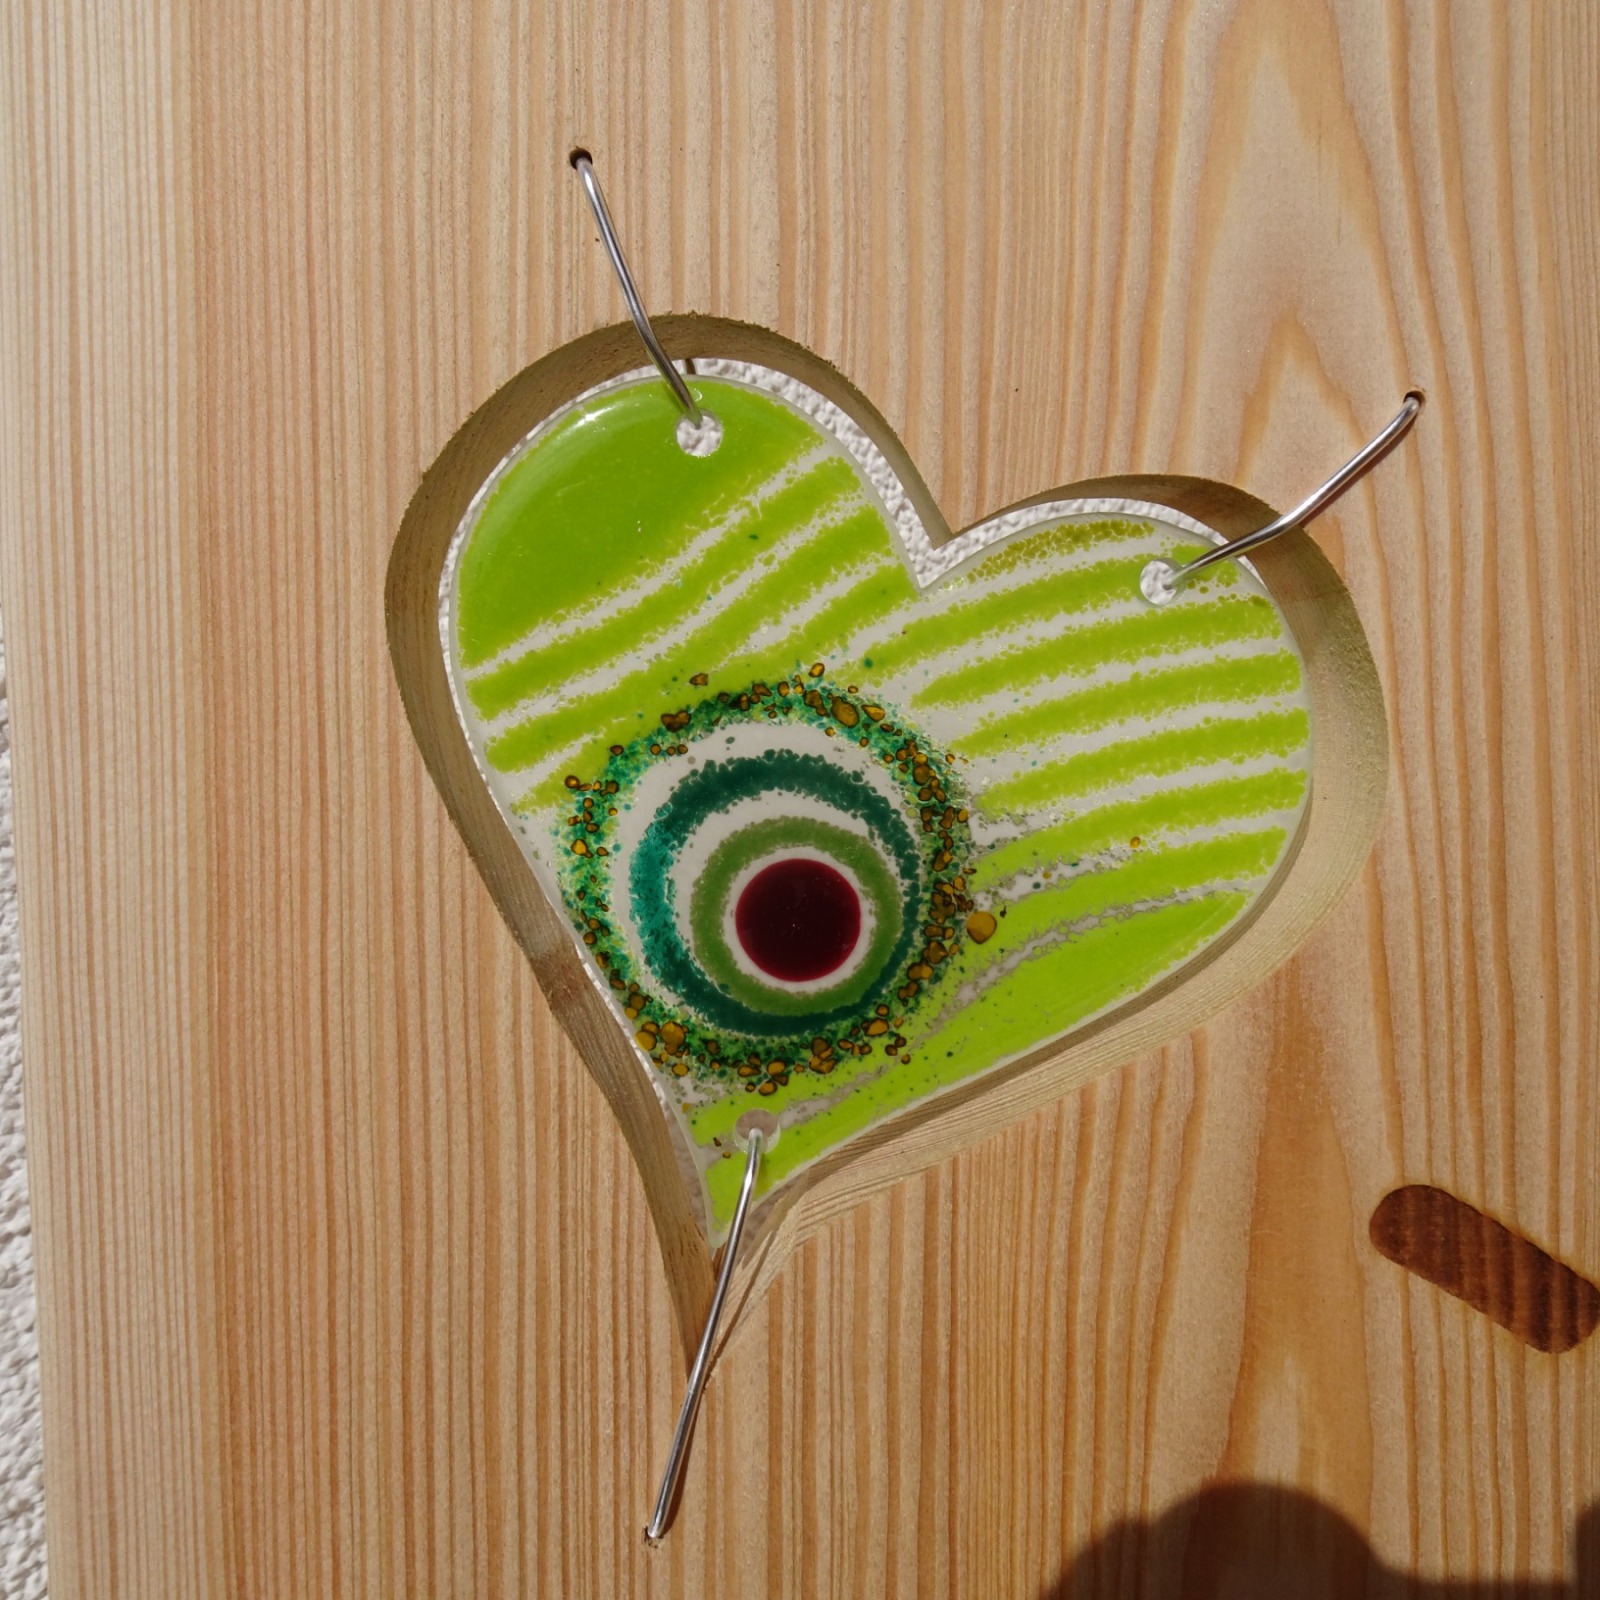 Willkommensschild, Gartenstele aus Lärchenholz mit einem grünen Glas Herz und Schriftzug,